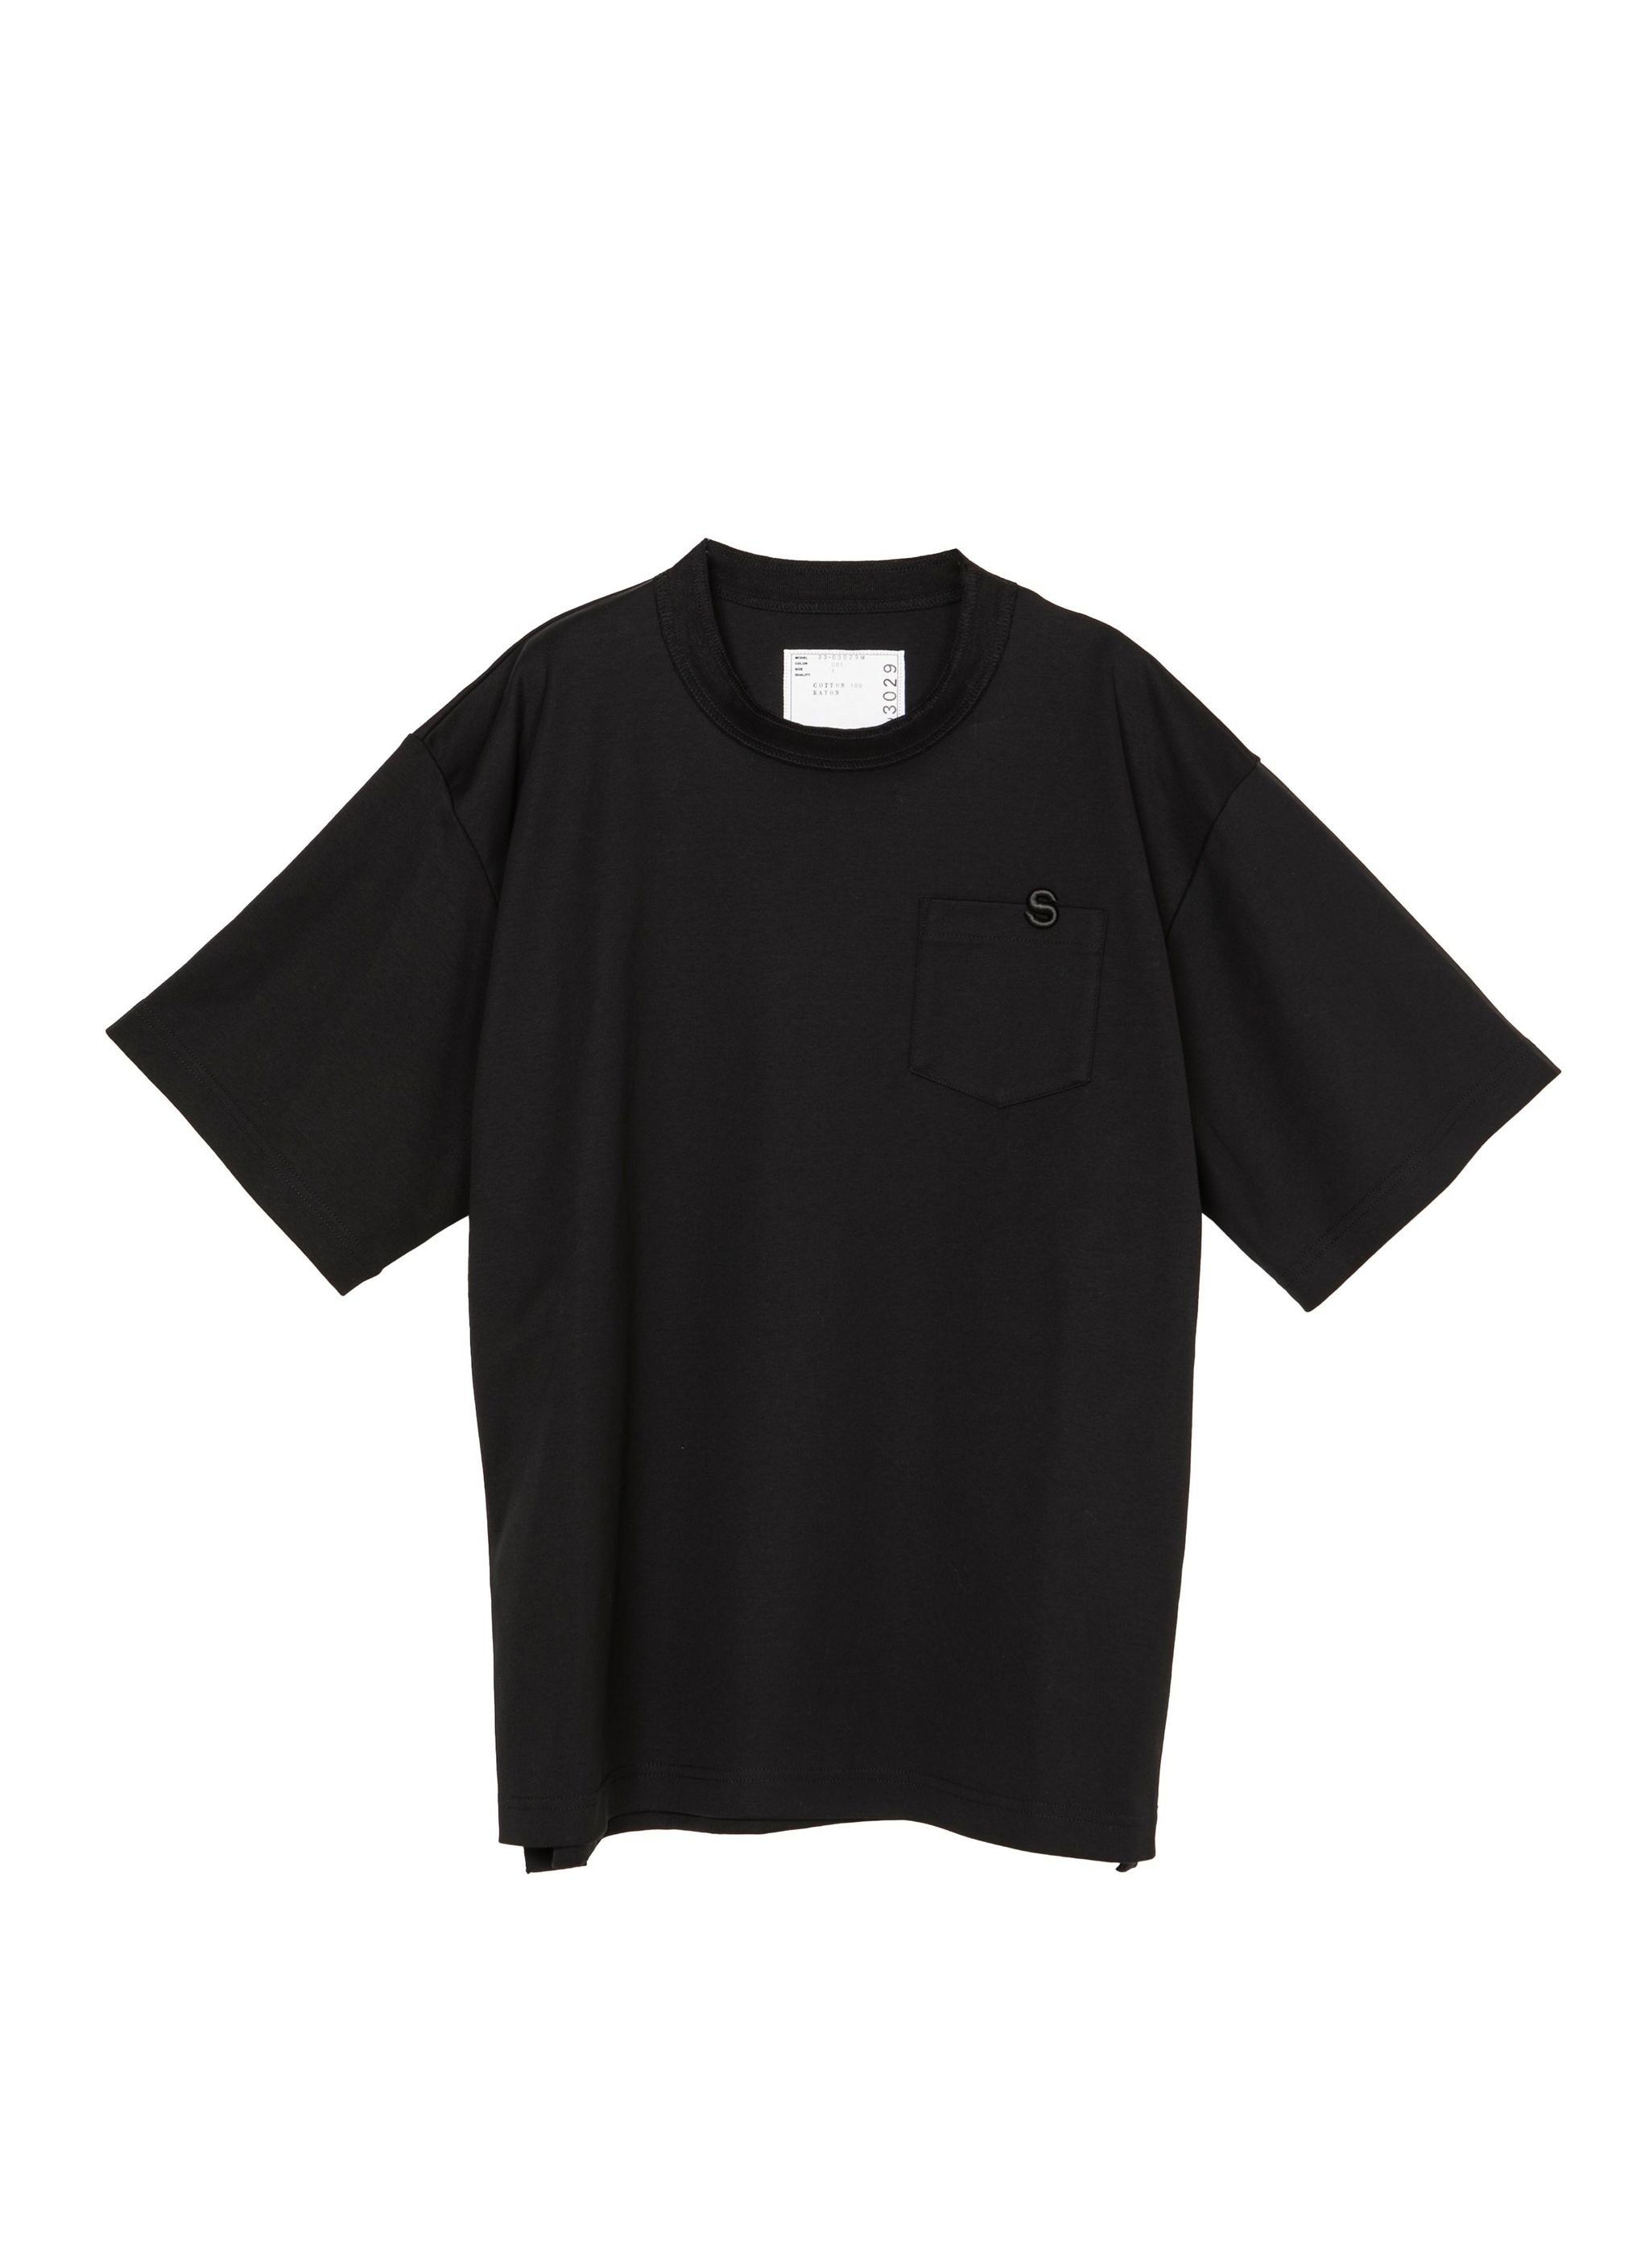 s Cotton Jersey T-Shirt - 1